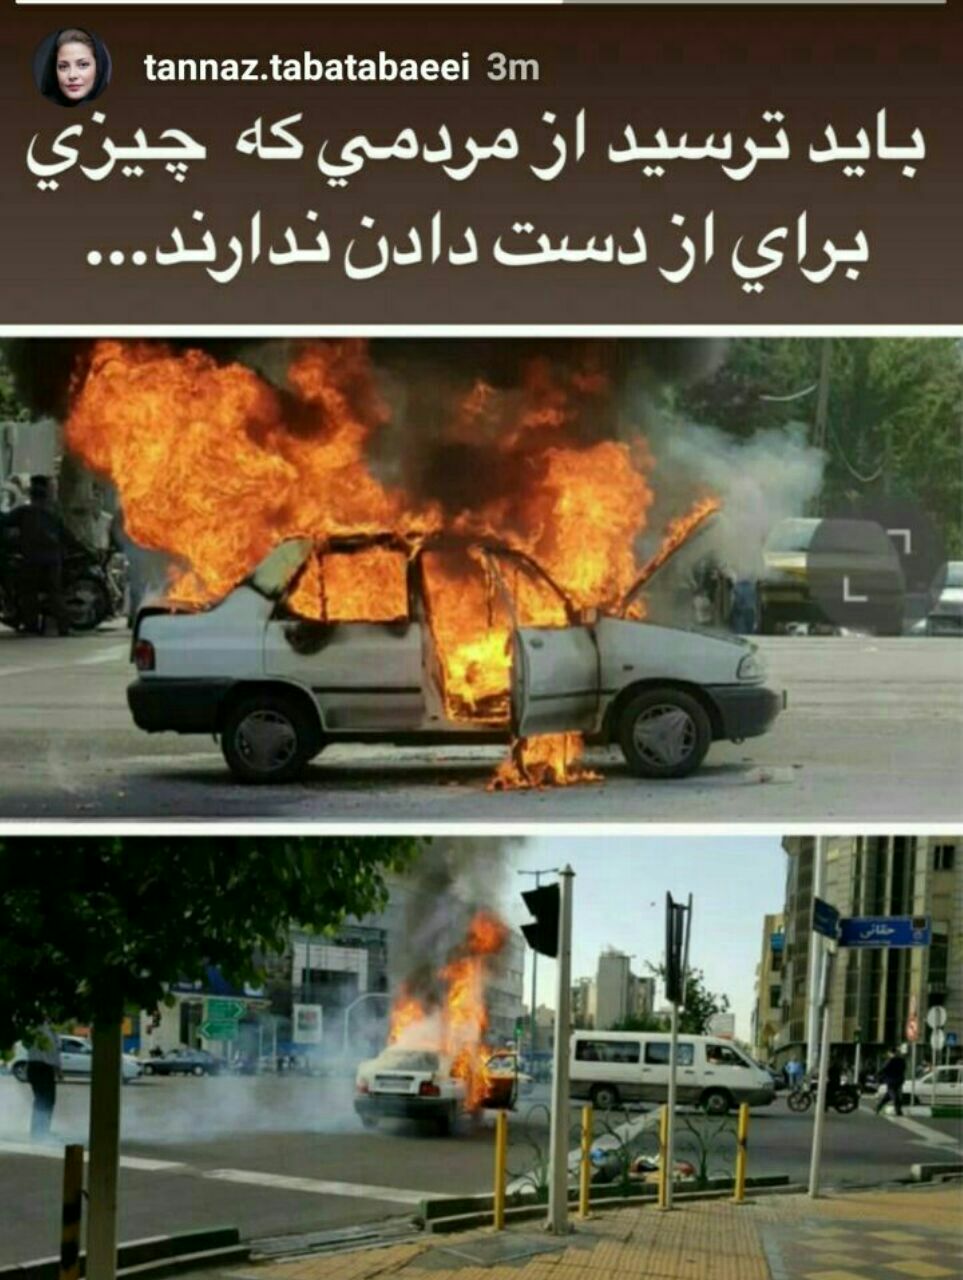 واکنش خانم بازیگر به آتش زدن خودرو در تهران +عکس